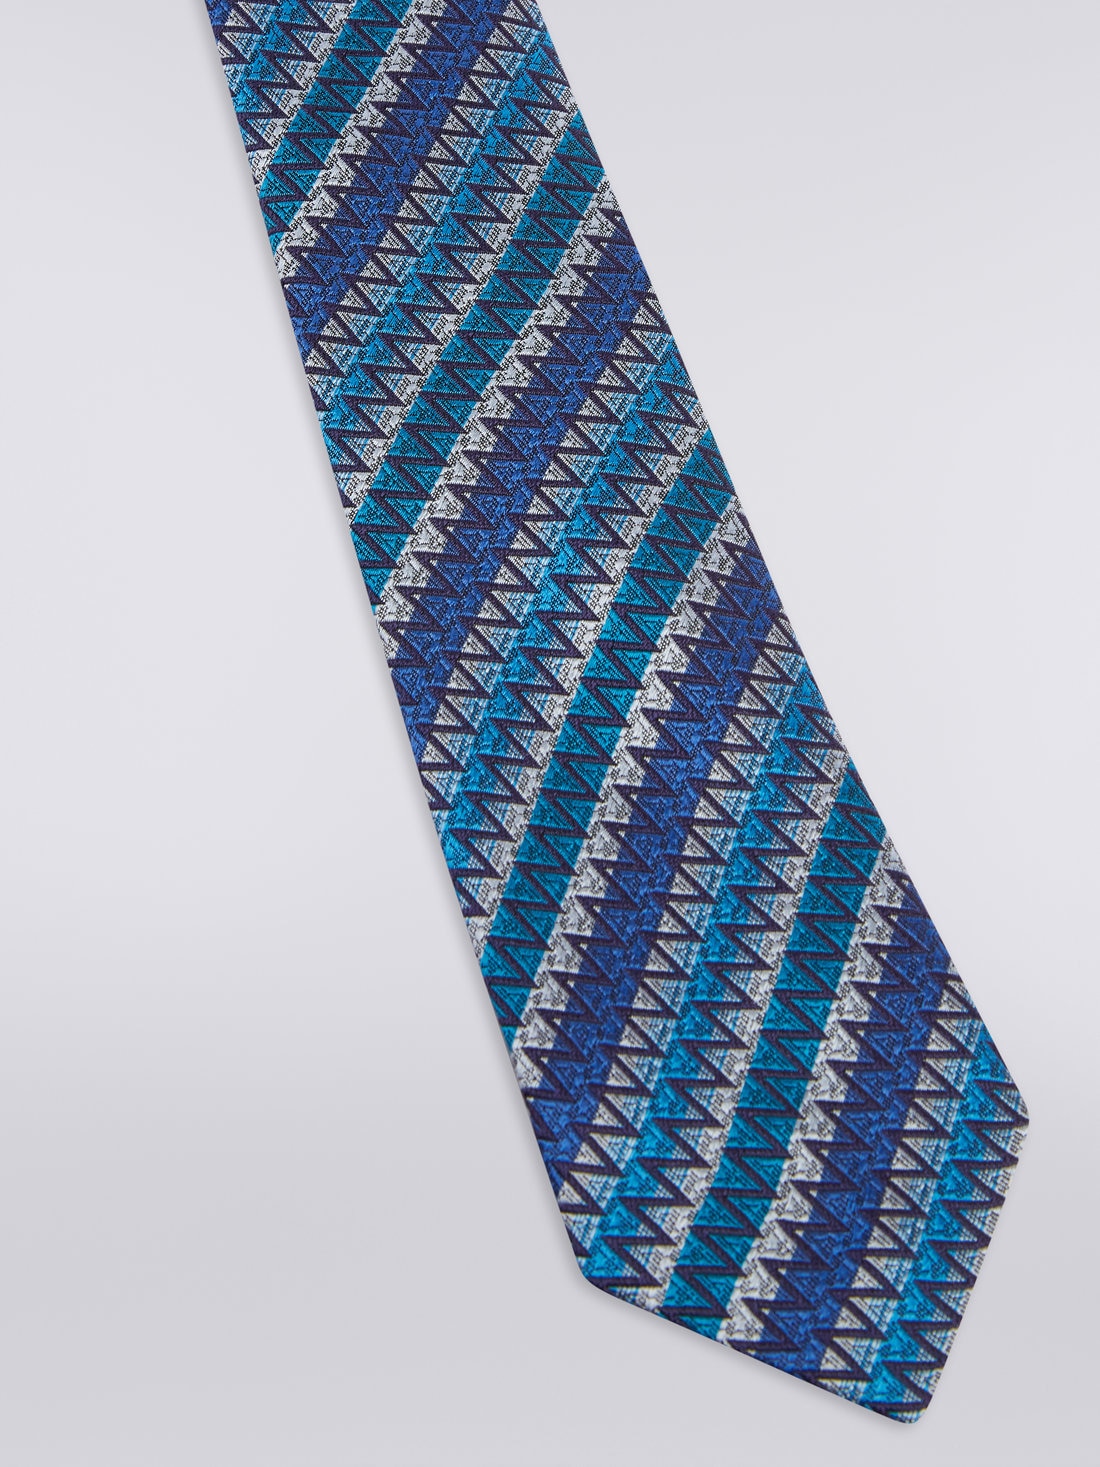 cravate bleue pour enfant sur Label Cravate